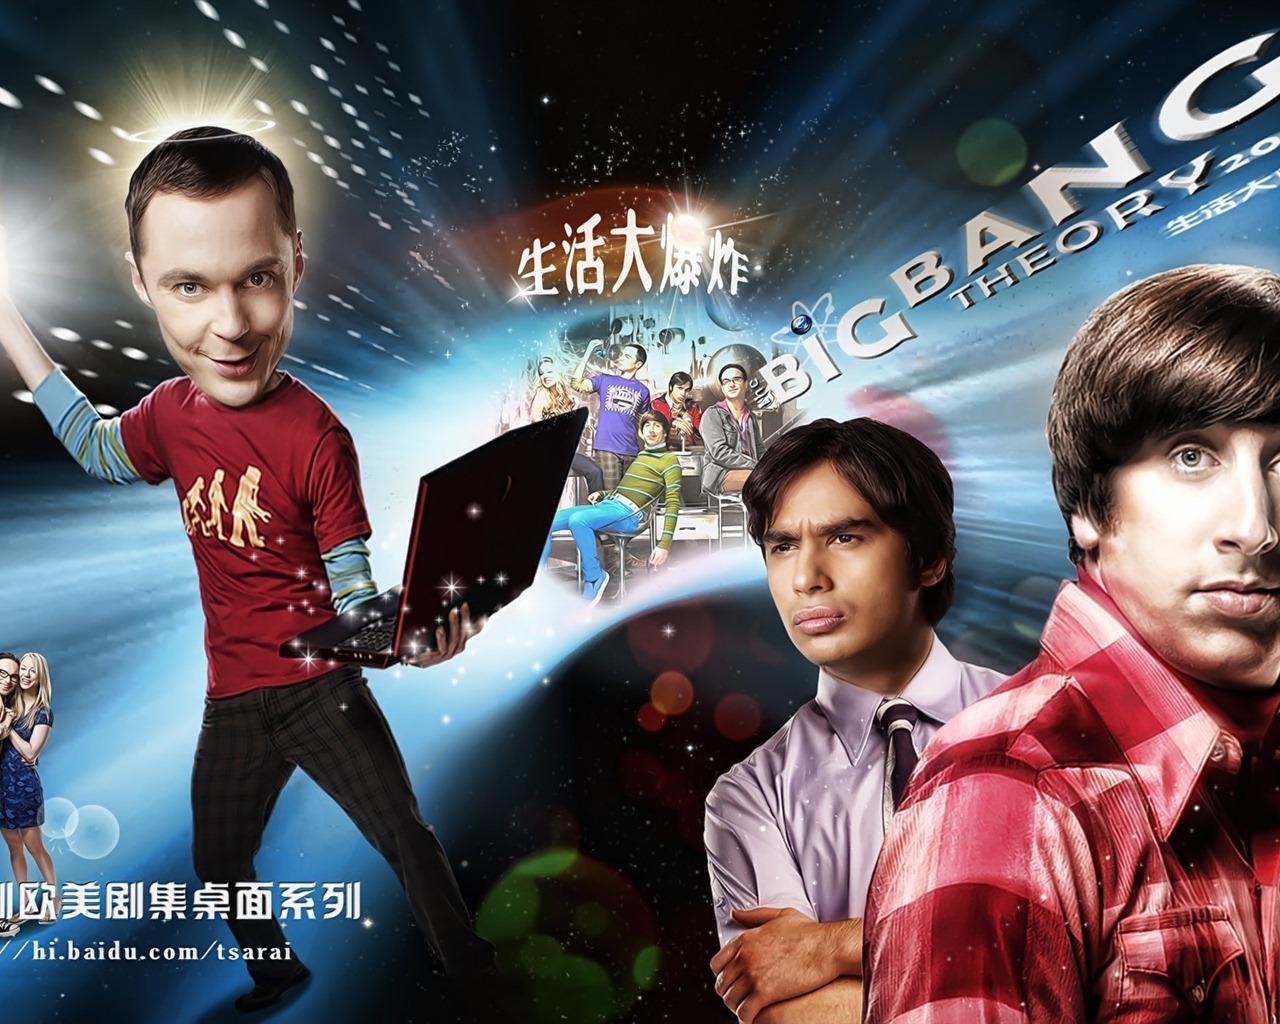 The Big Bang Theory 生活大爆炸 电视剧高清壁纸27 - 1280x1024